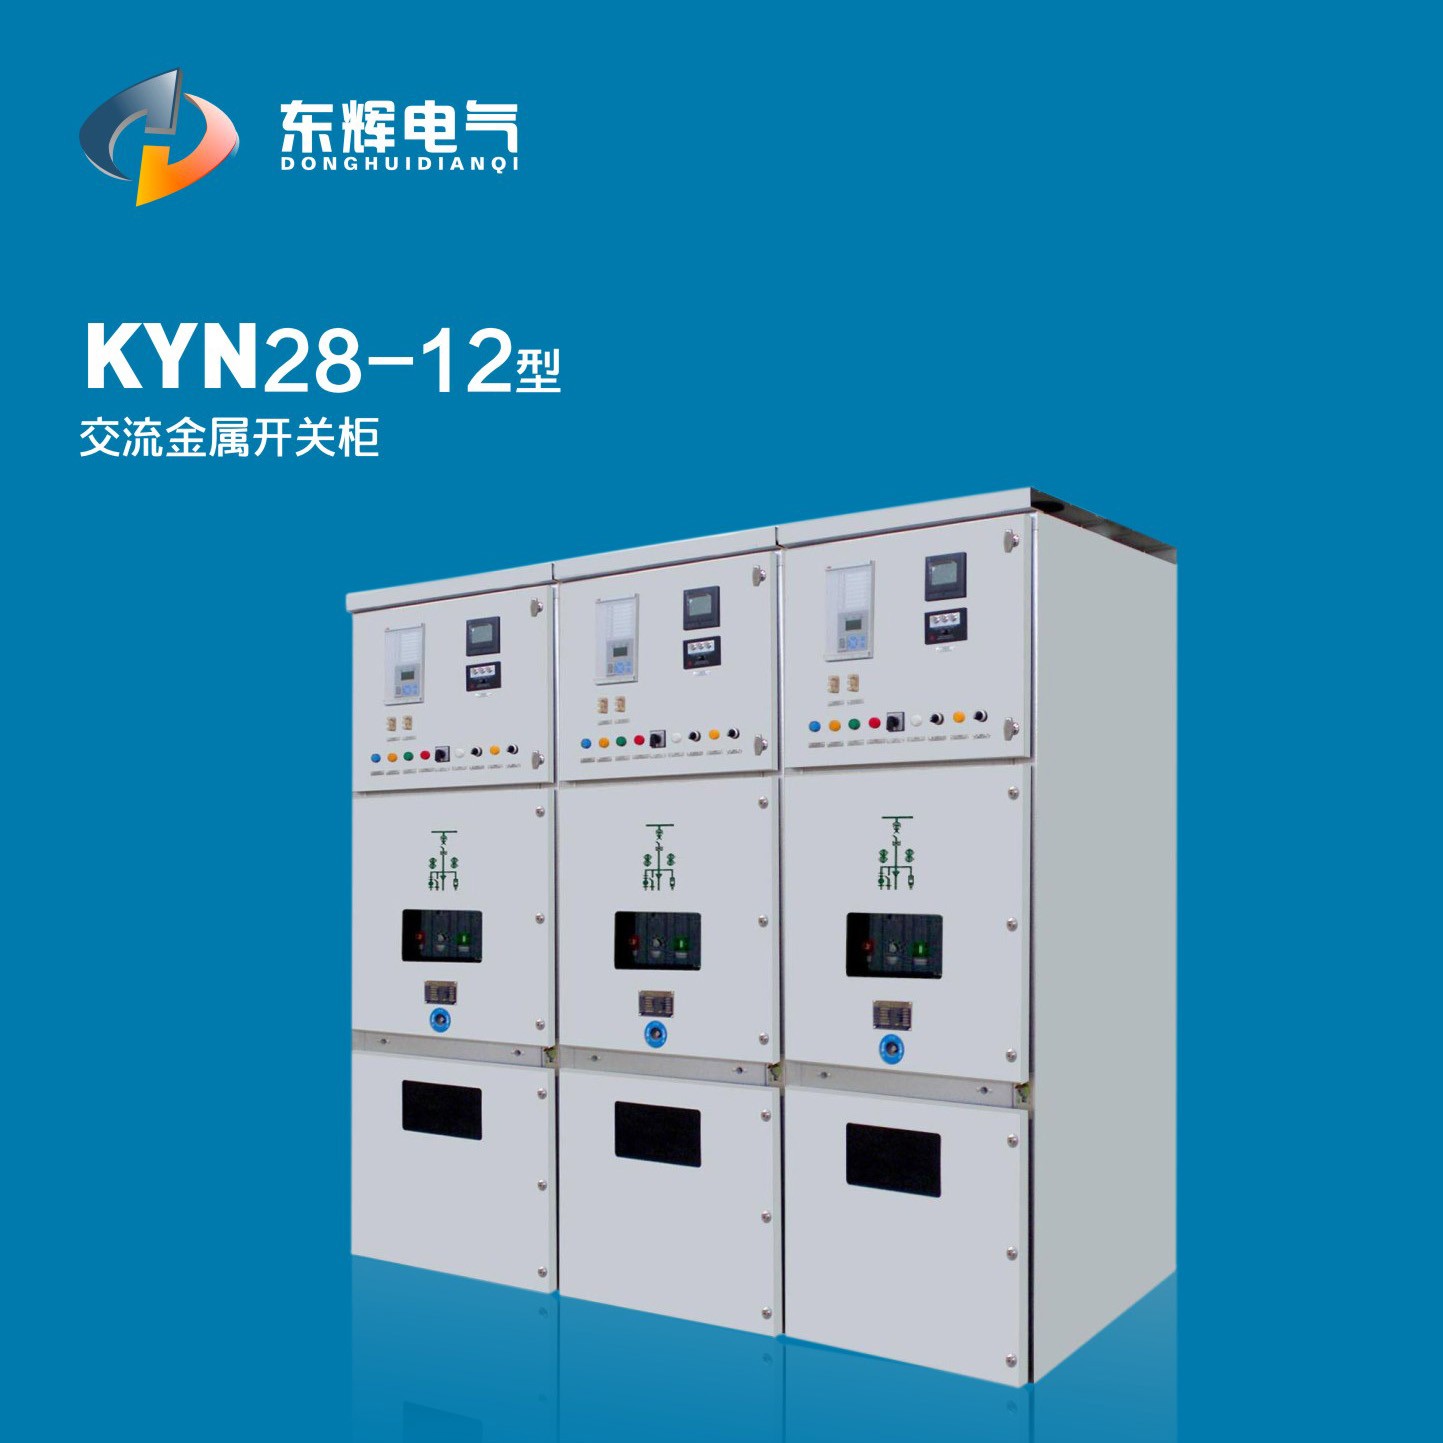 KYN28-12型交流金屬開關柜